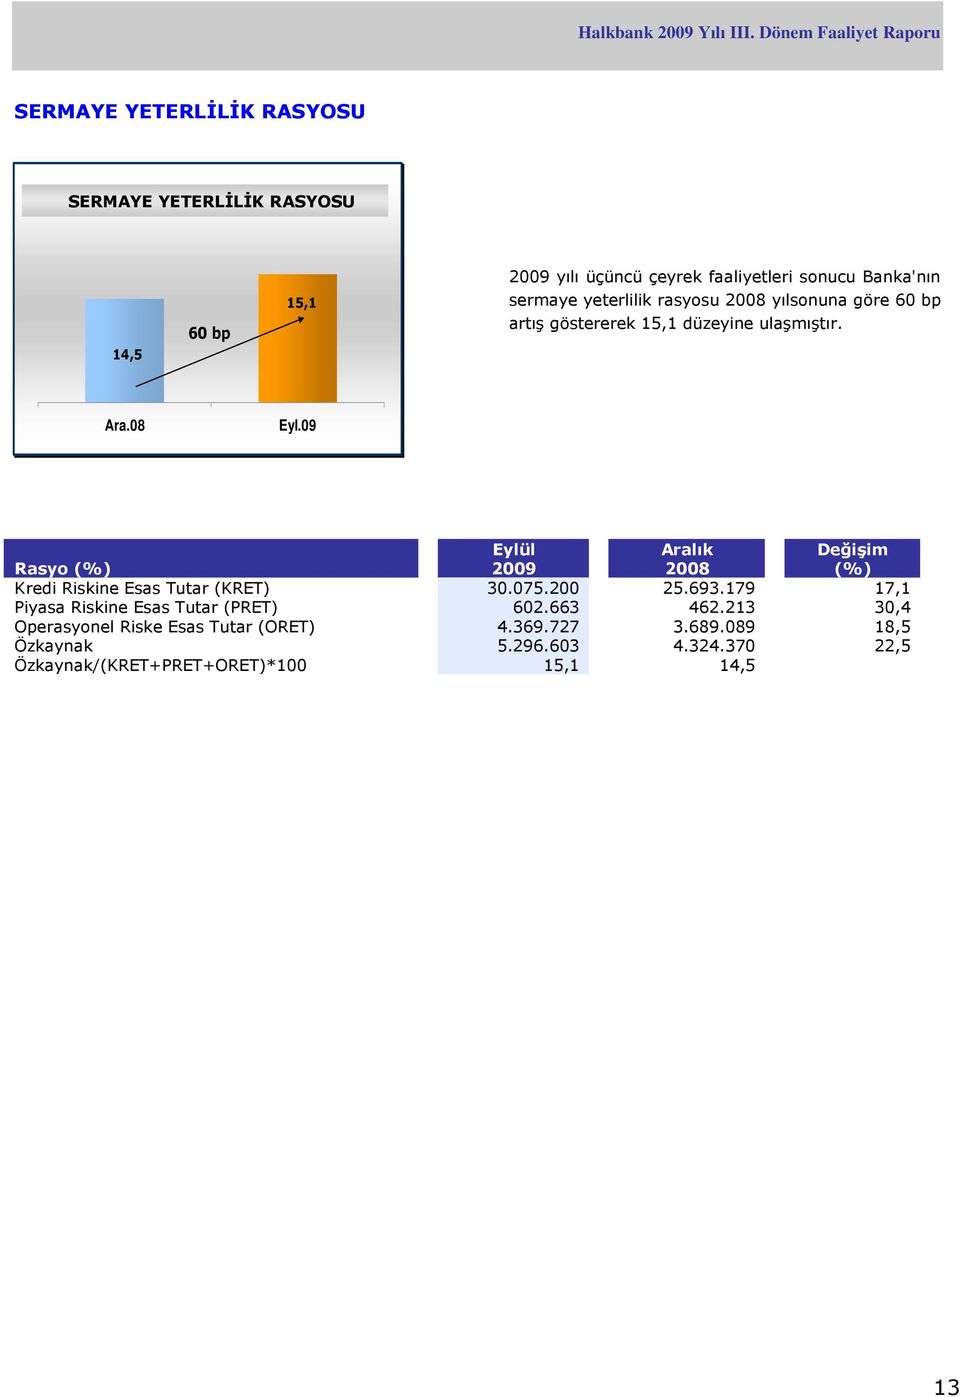 08 Rasyo (%) Eylül 2009 Aralık 2008 Değişim (%) Kredi Riskine Esas Tutar (KRET) 30.075.200 25.693.